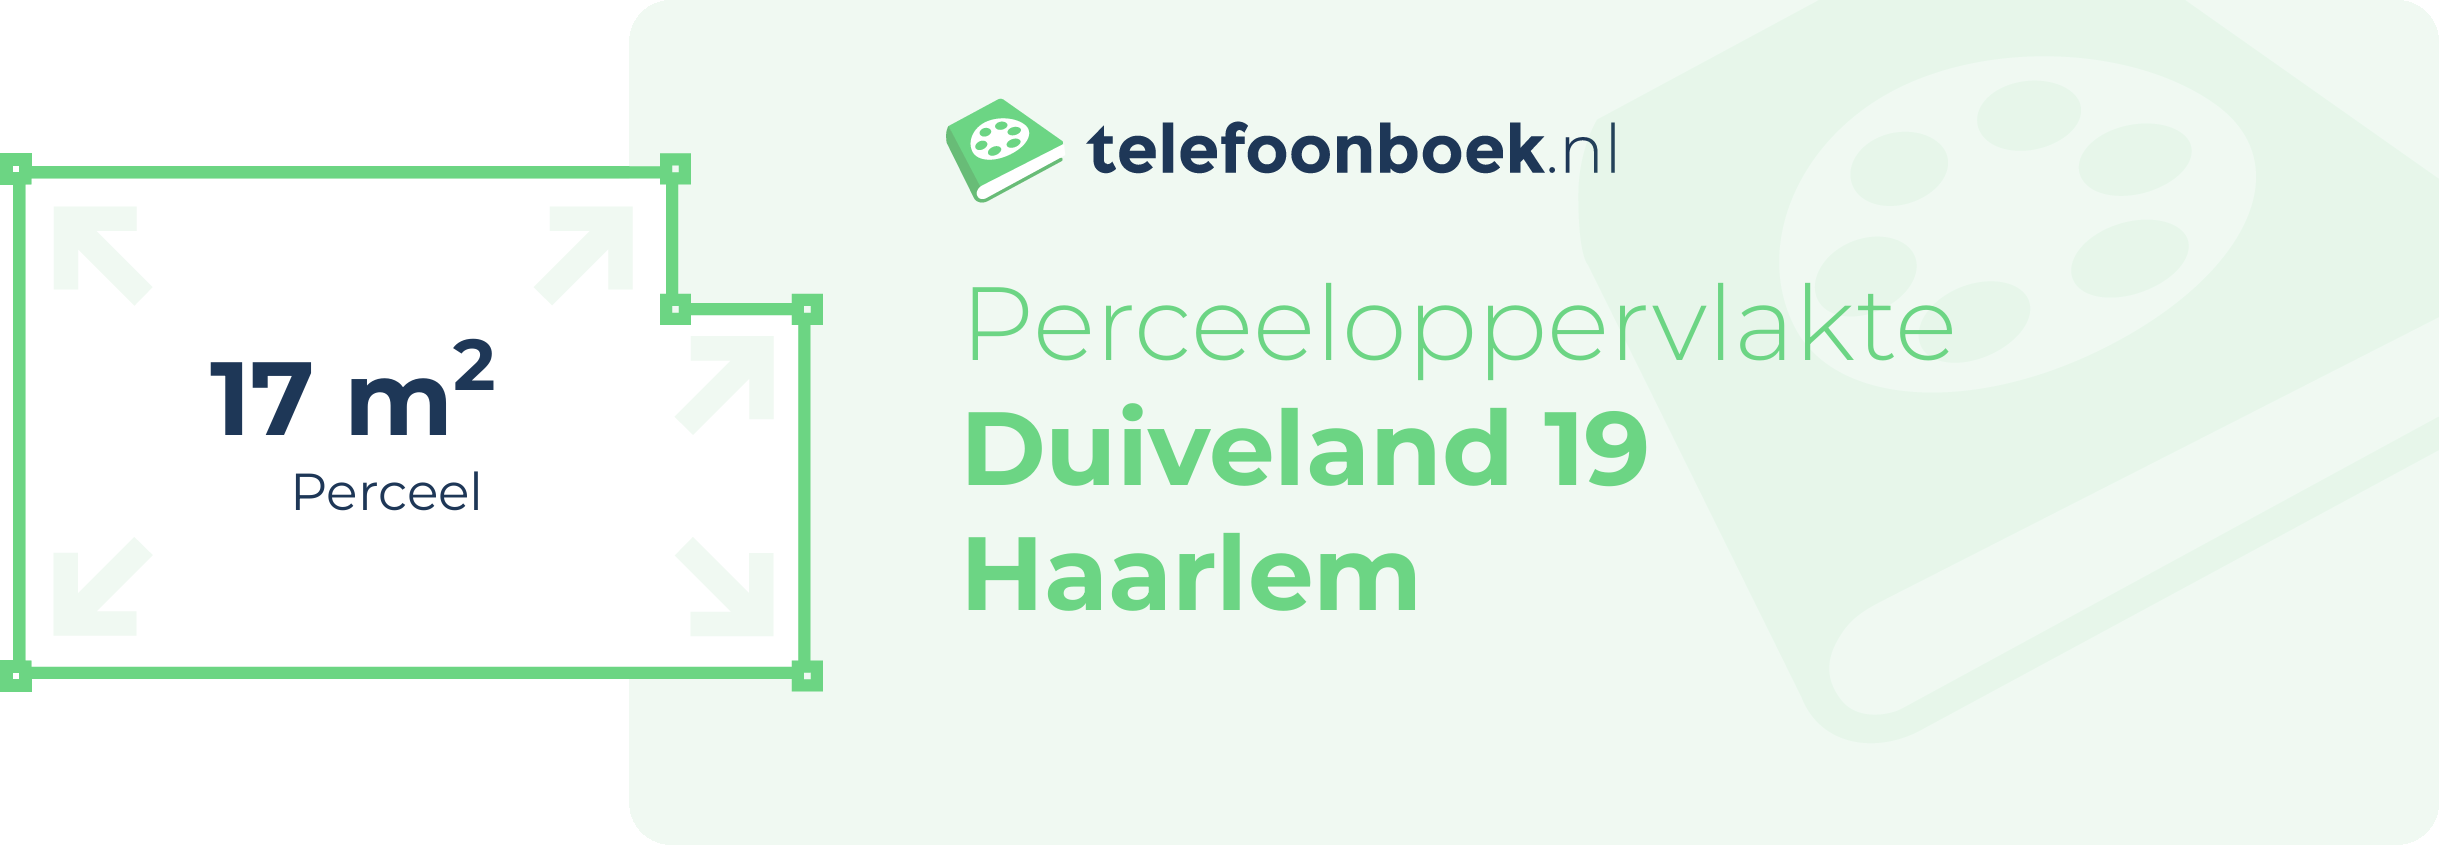 Perceeloppervlakte Duiveland 19 Haarlem